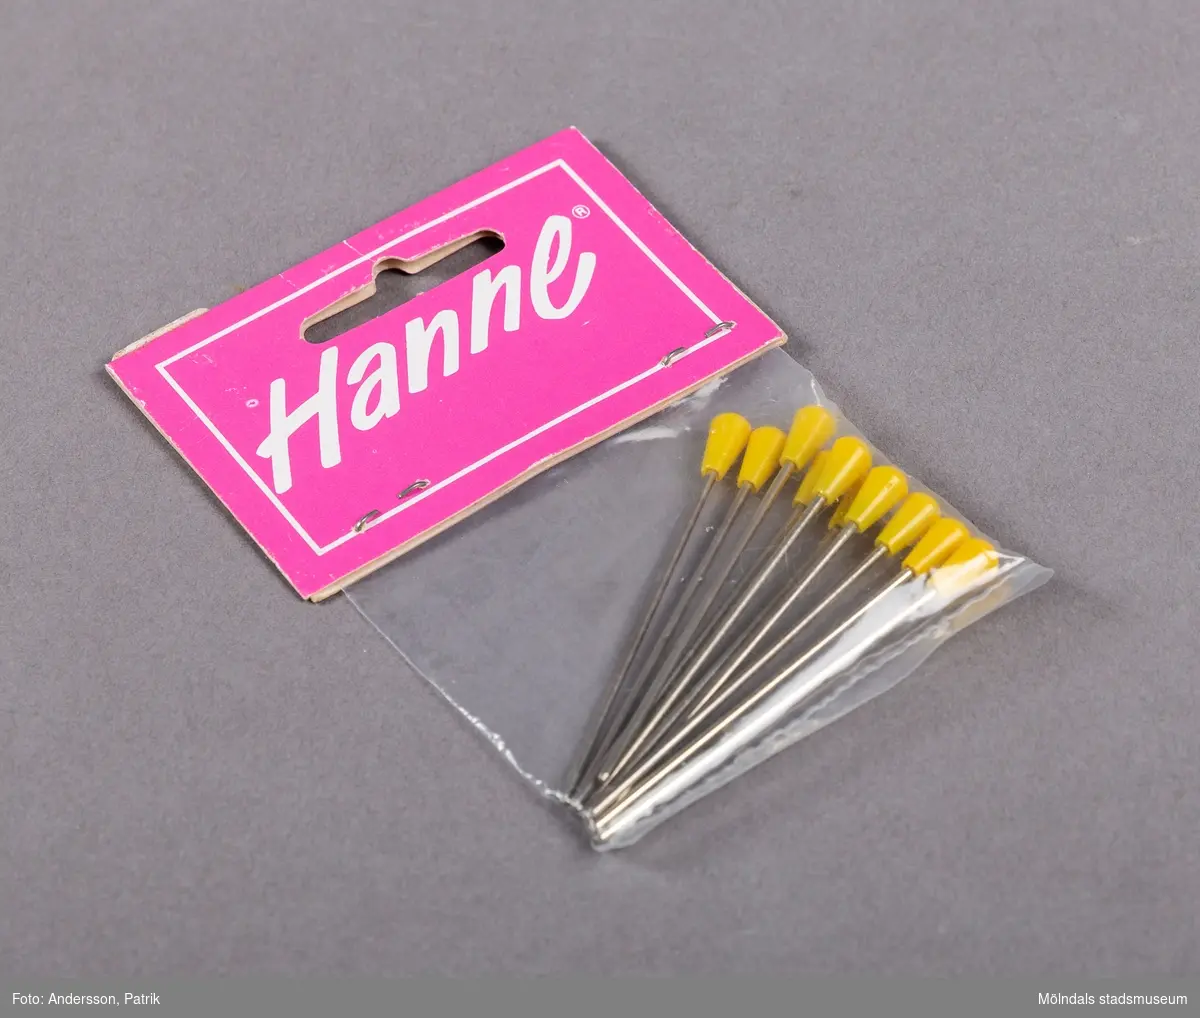 En mindre plastpåse innehållande nålar med gul ände av plast. Etiketten som är rosa, innehåller företagets namn skrivet i vit text, inom en vit ram.
Etiketten är fasthäftad på påsen med två häftstift.